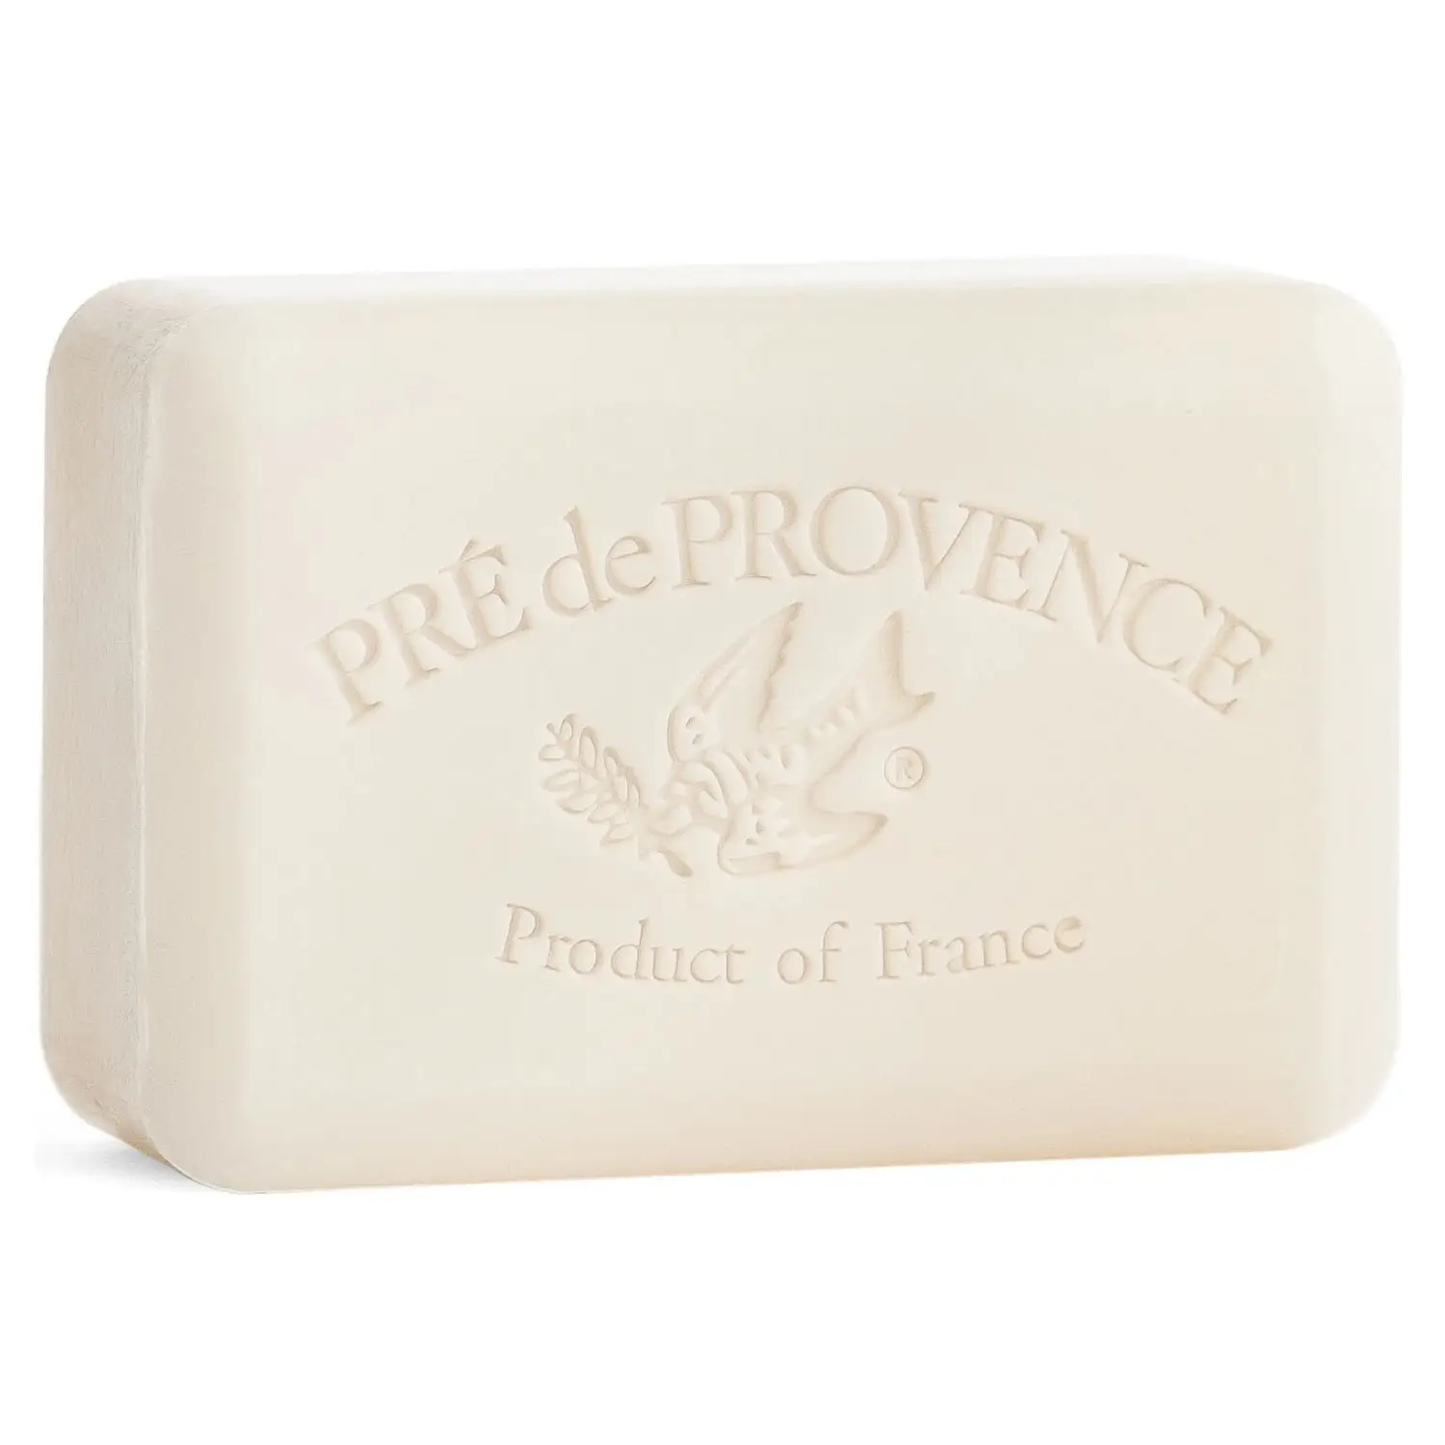 Pré de Provence Soap Bars